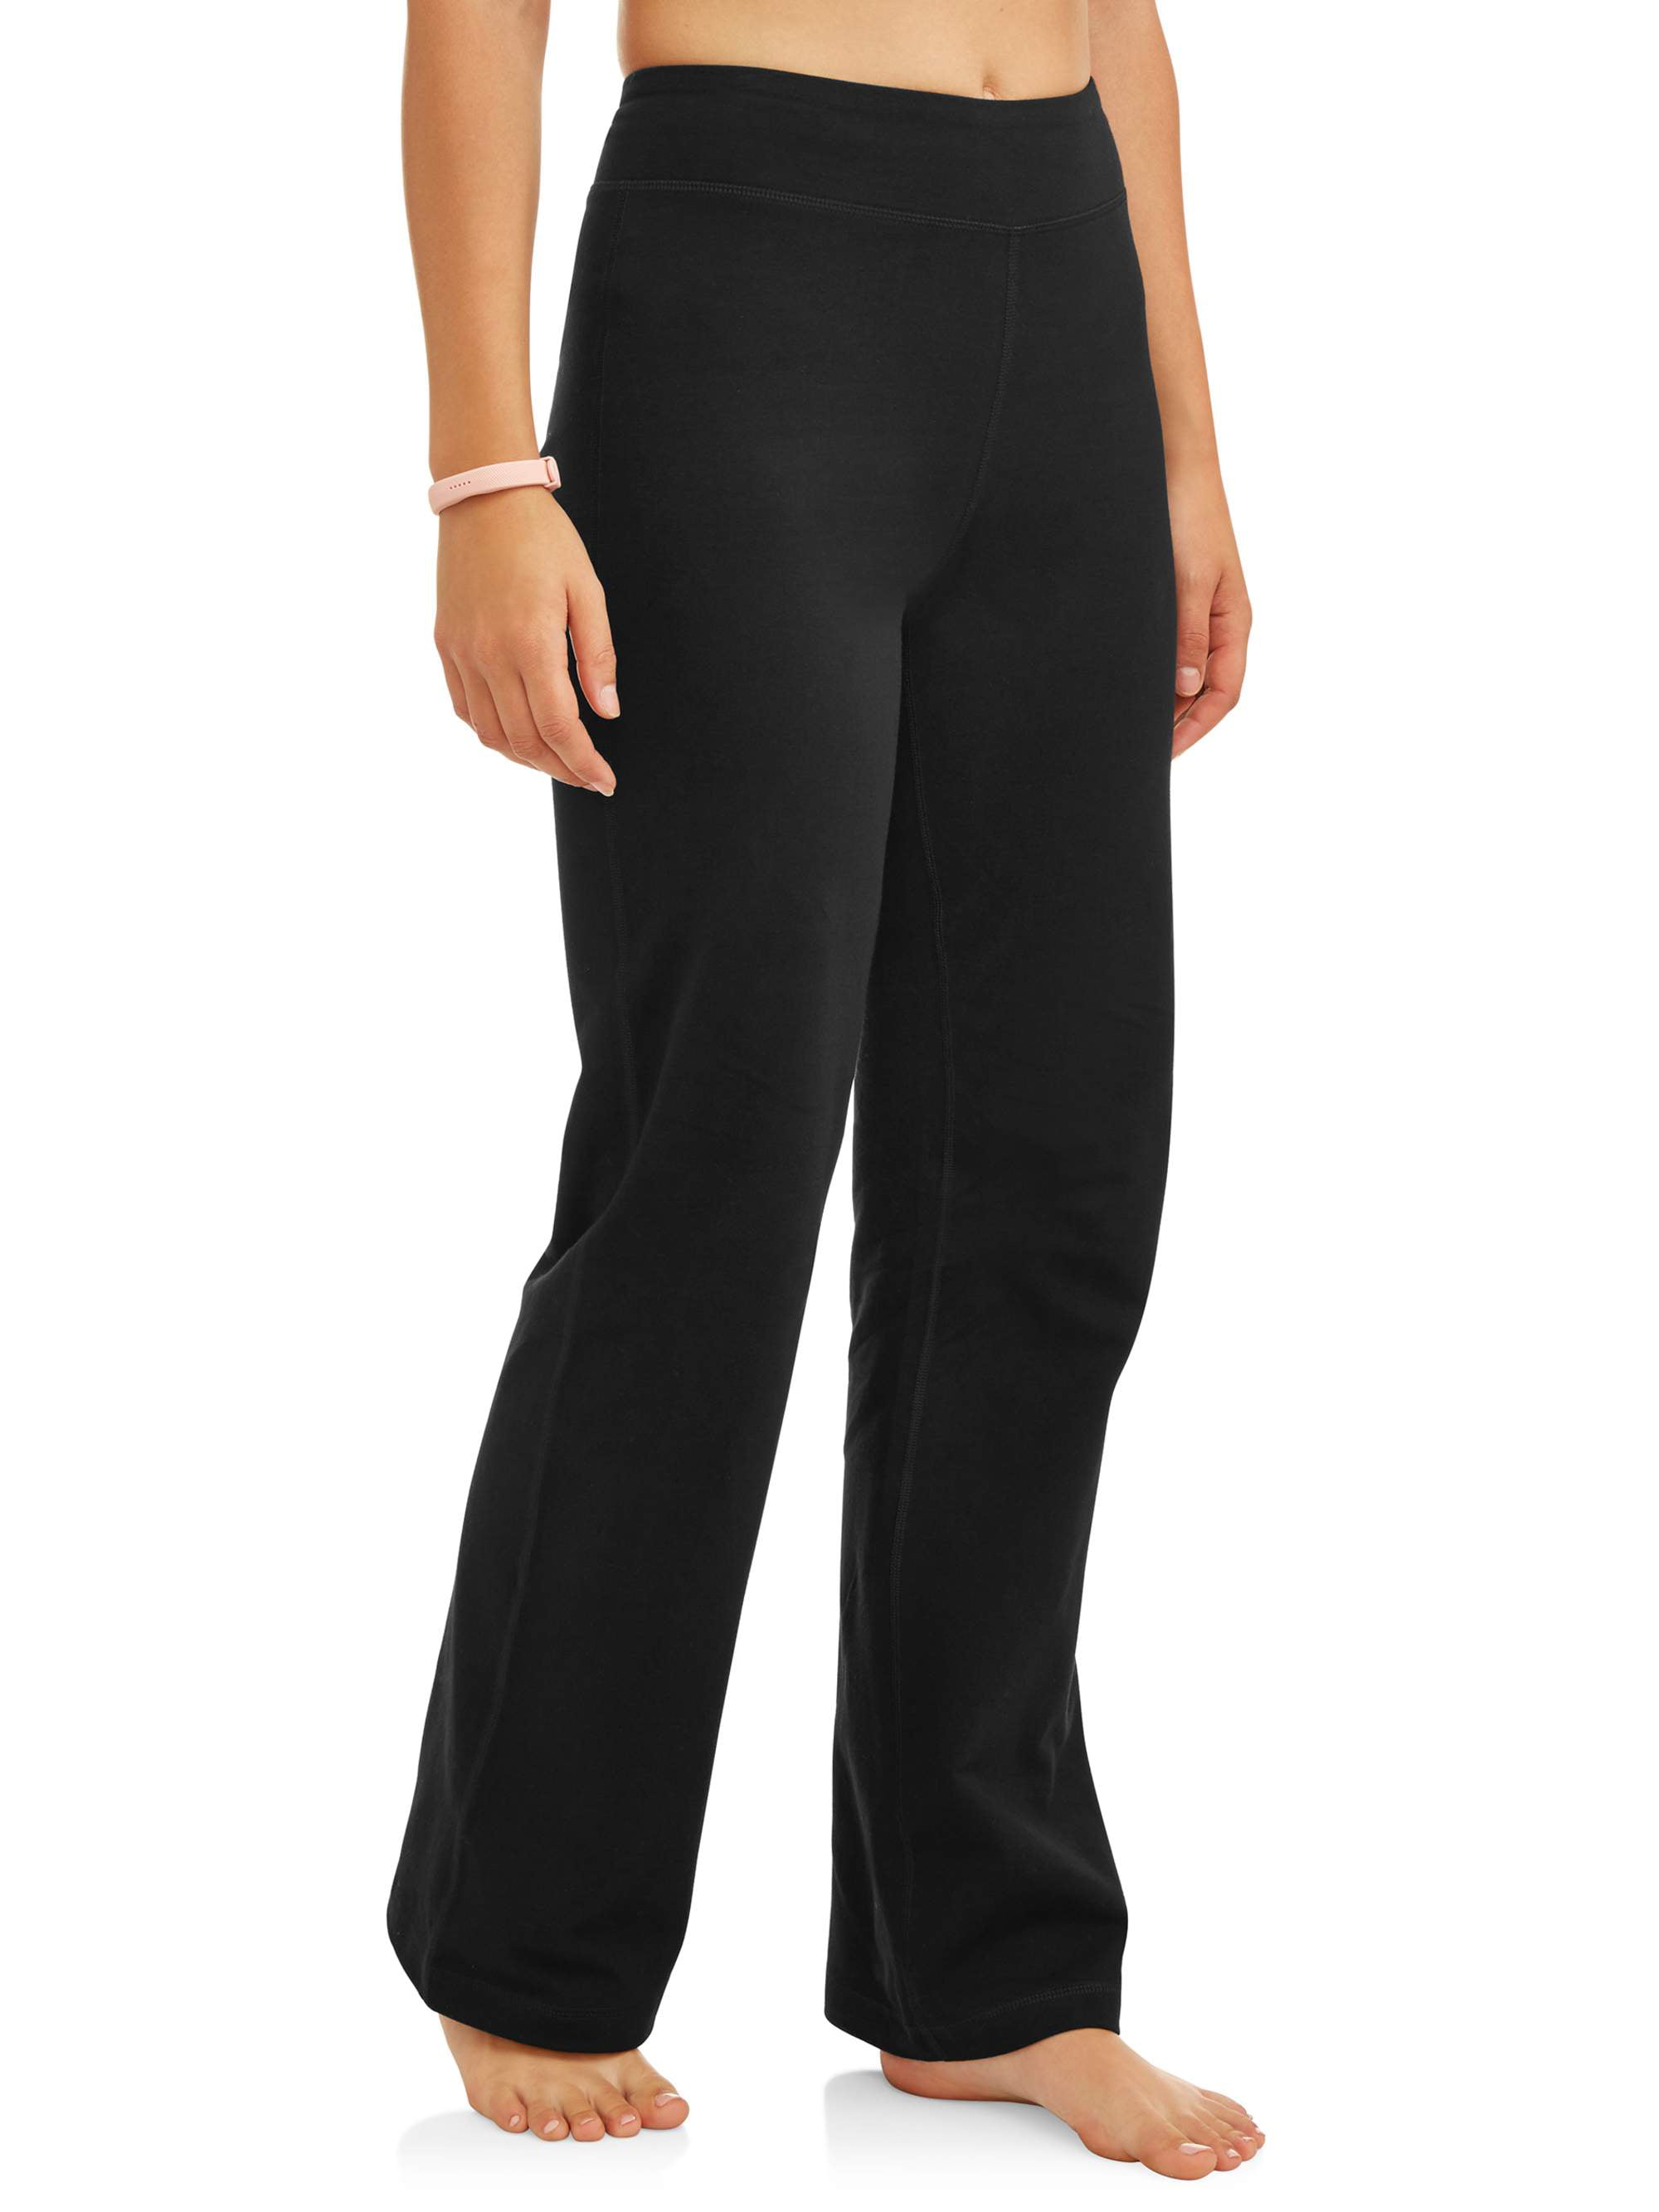 Women's Dri More Core Bootcut Yoga Pant SIZE XL Black --CH7-- | eBay